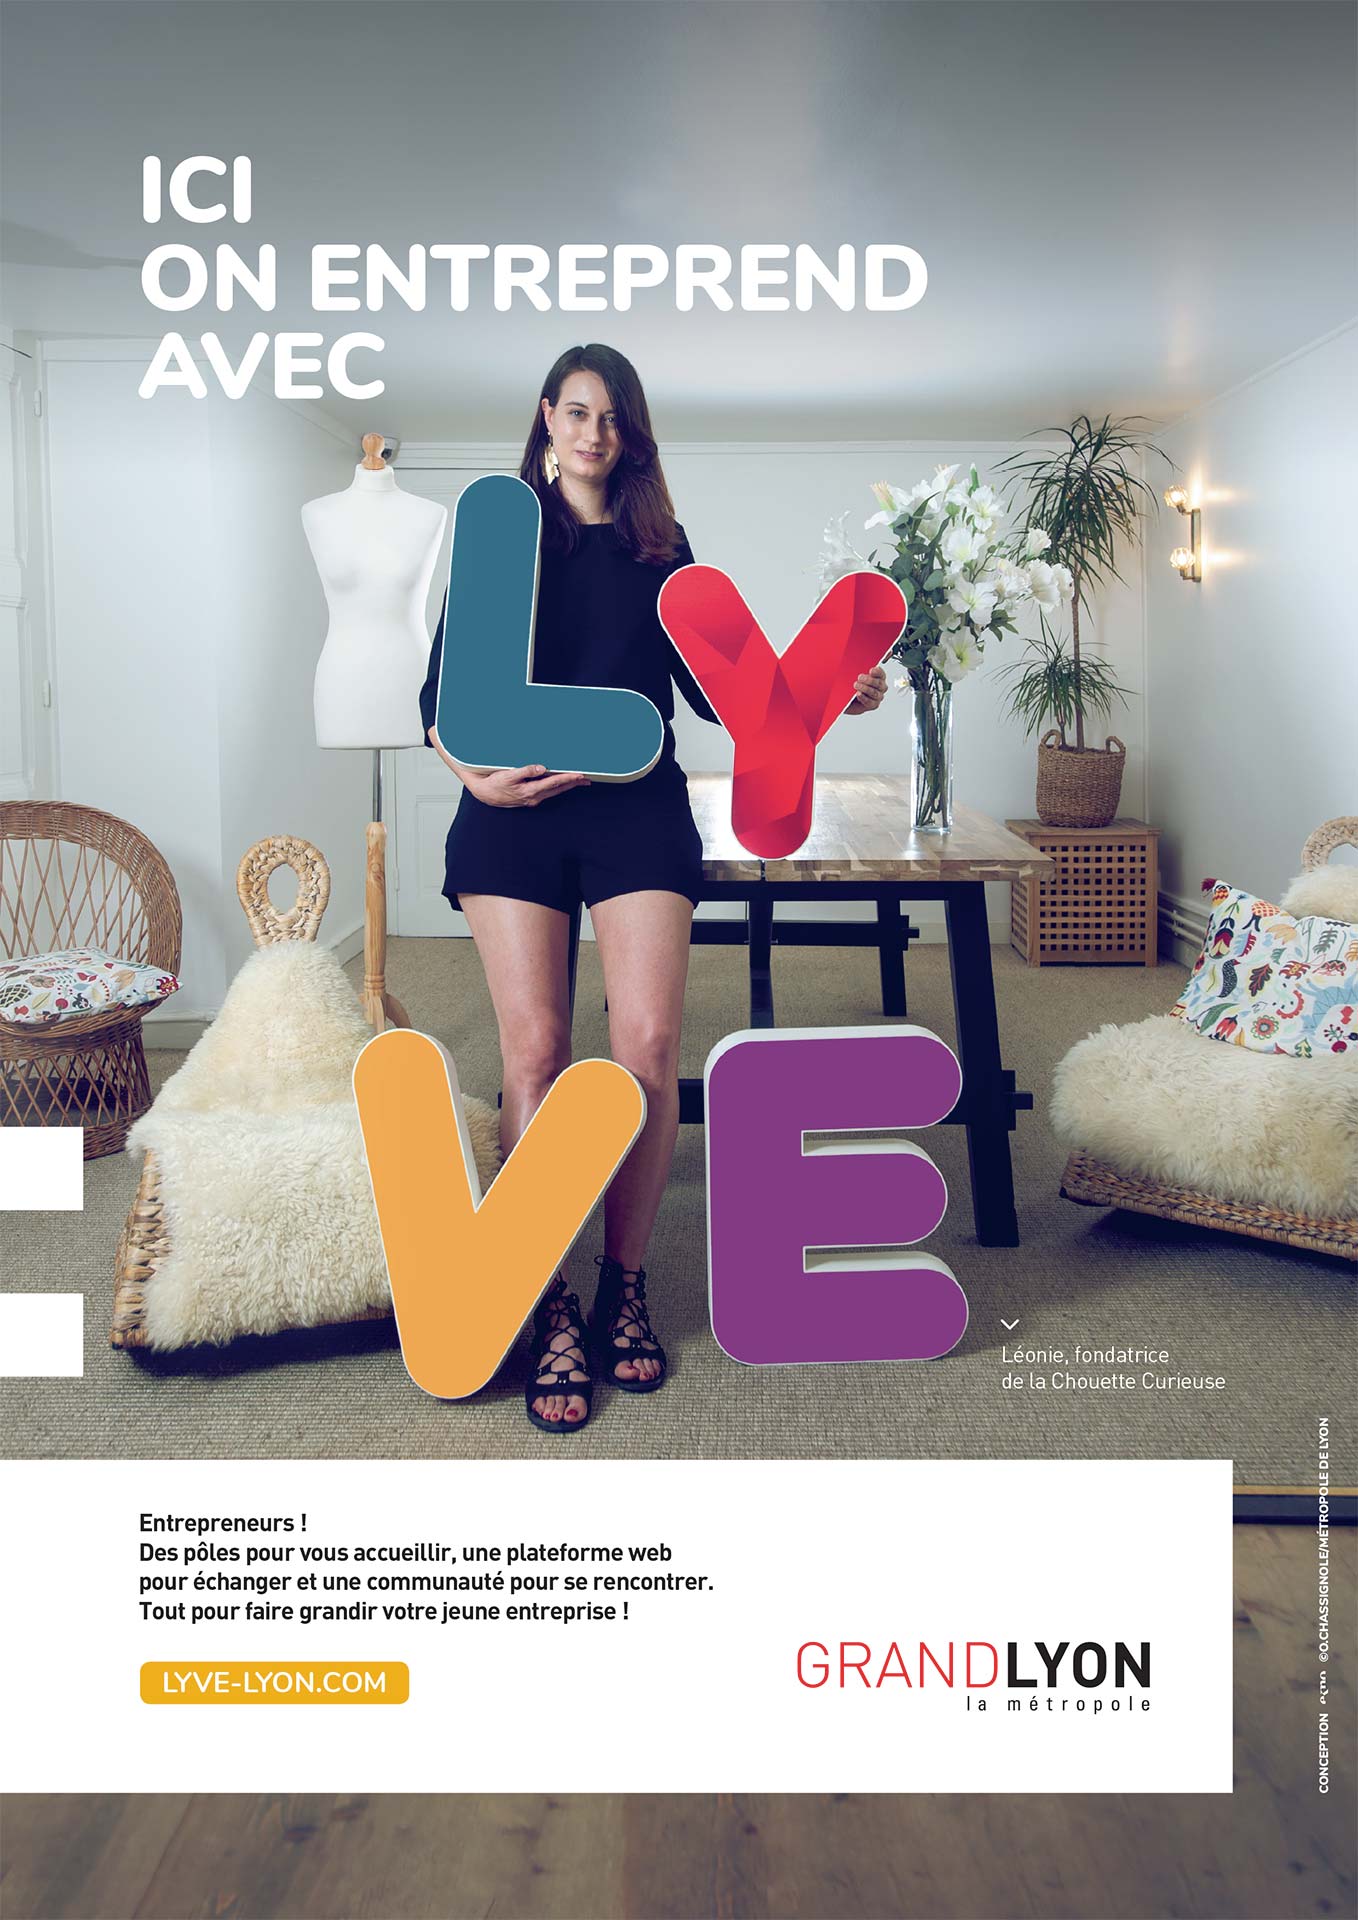 Publicité "Ici on entreprend avec LYVE" de la Métropole de Lyon